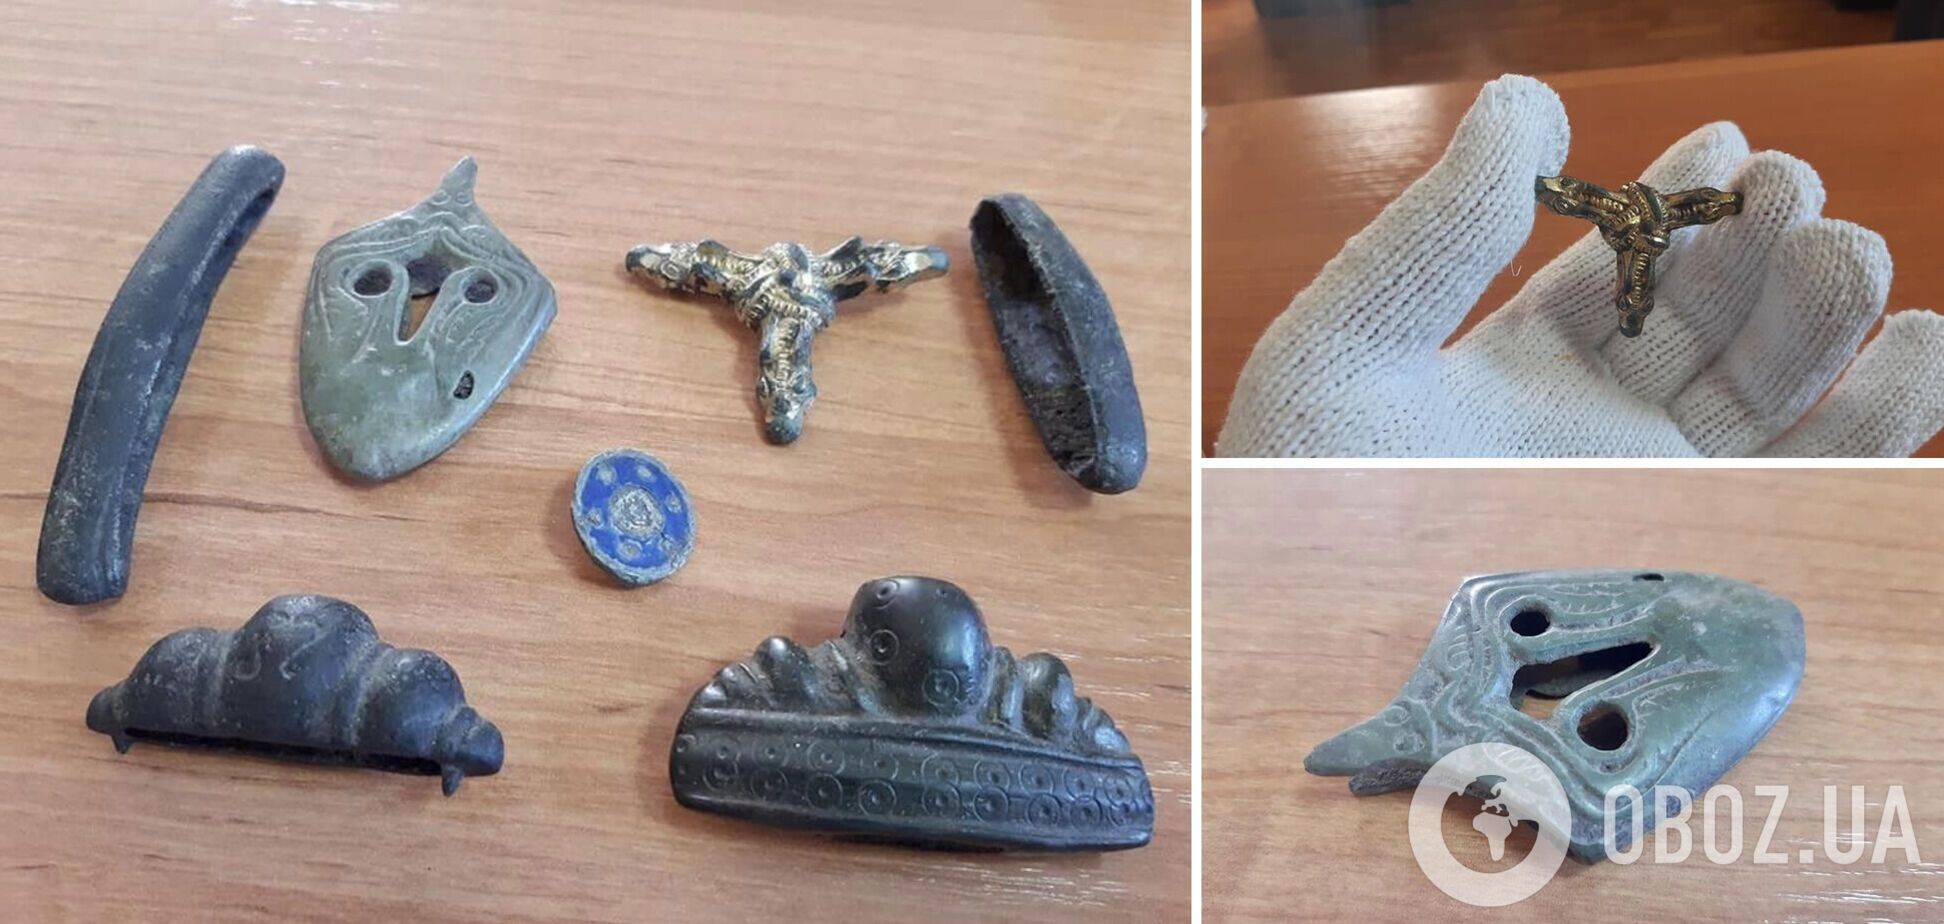 Митники виявили в посилці артефакти часів Київської Русі